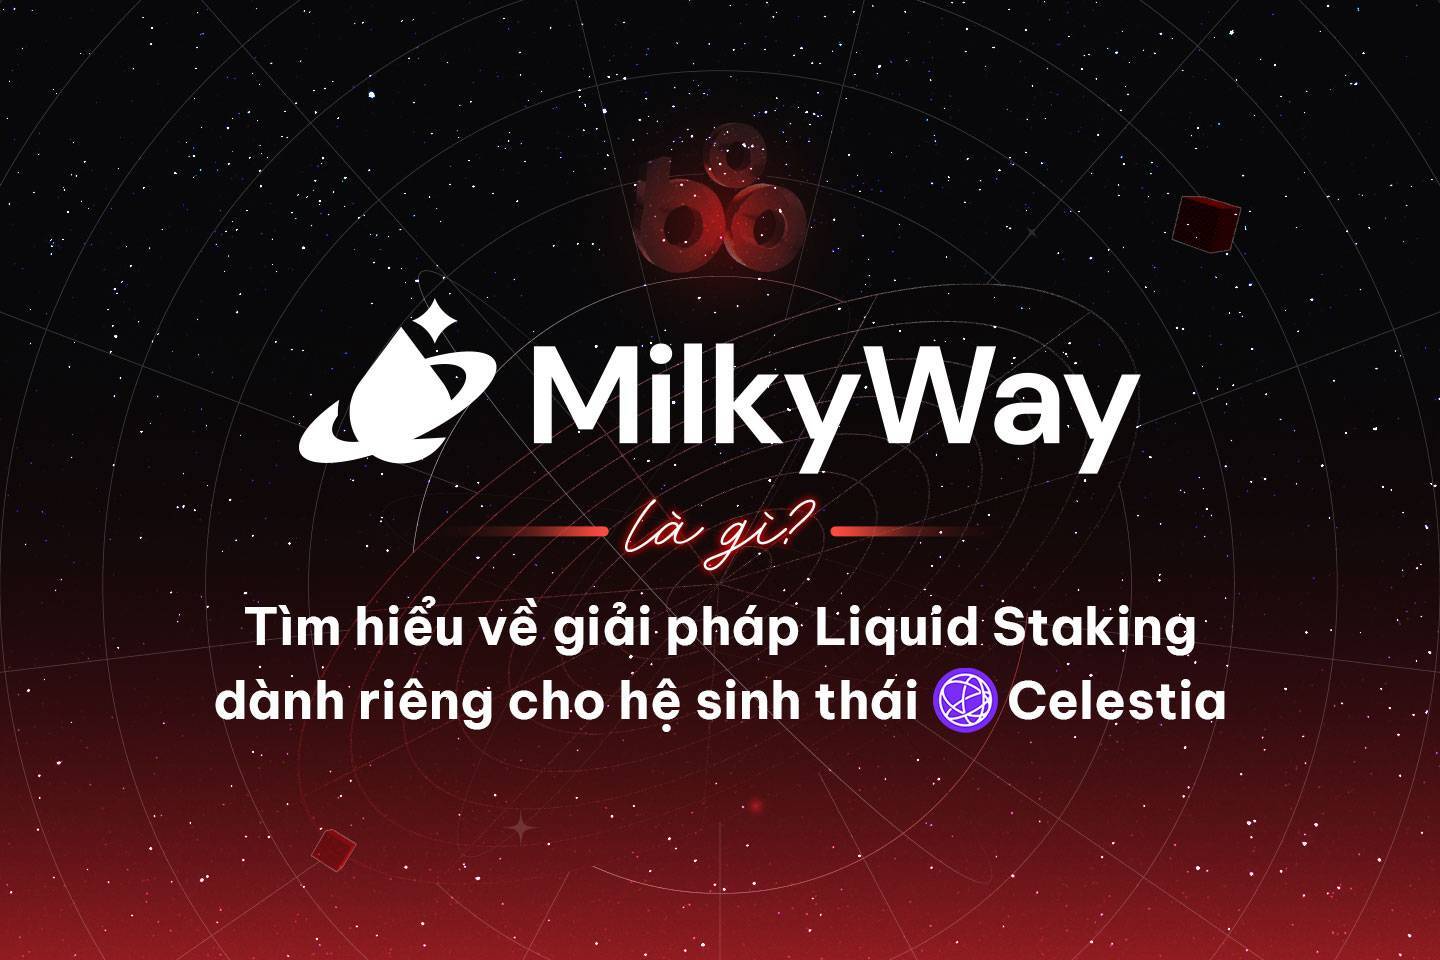 Milkyway Là Gì Tìm Hiểu Về Giải Pháp Liquid Staking Dành Riêng Cho Hệ Sinh Thái Celestia